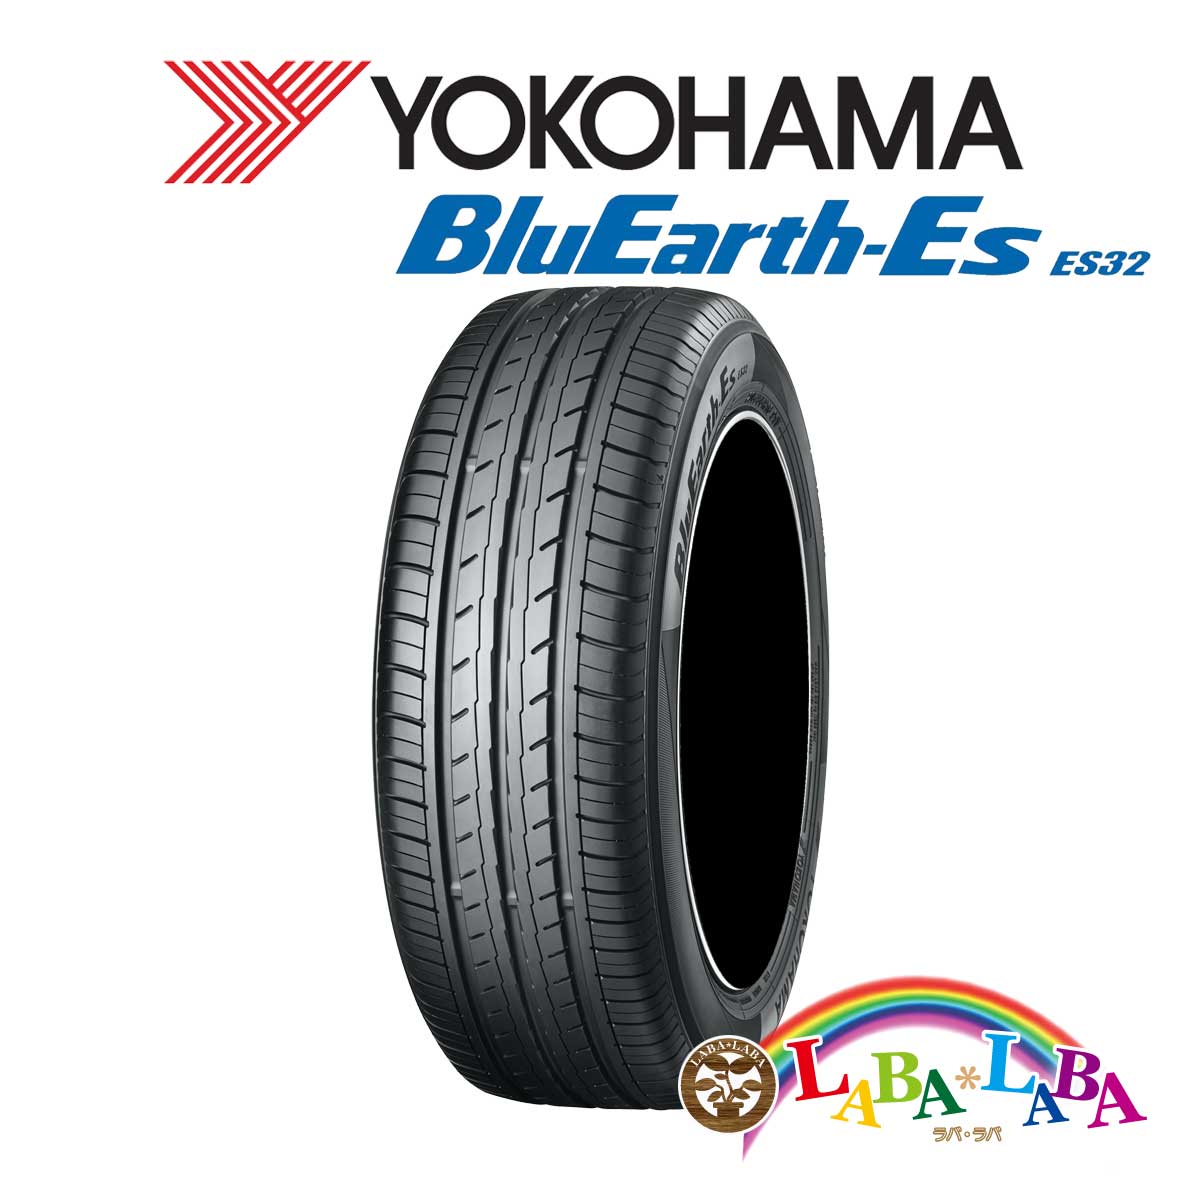 人気のファッションブランド 送料無料 国産タイヤ サマータイヤ 新品 日本限定 タイヤのみ 2本SET YOKOHAMA ヨコハマ ES32 BluEarth-Es 82T ブルーアース 2本セット 70R13 175